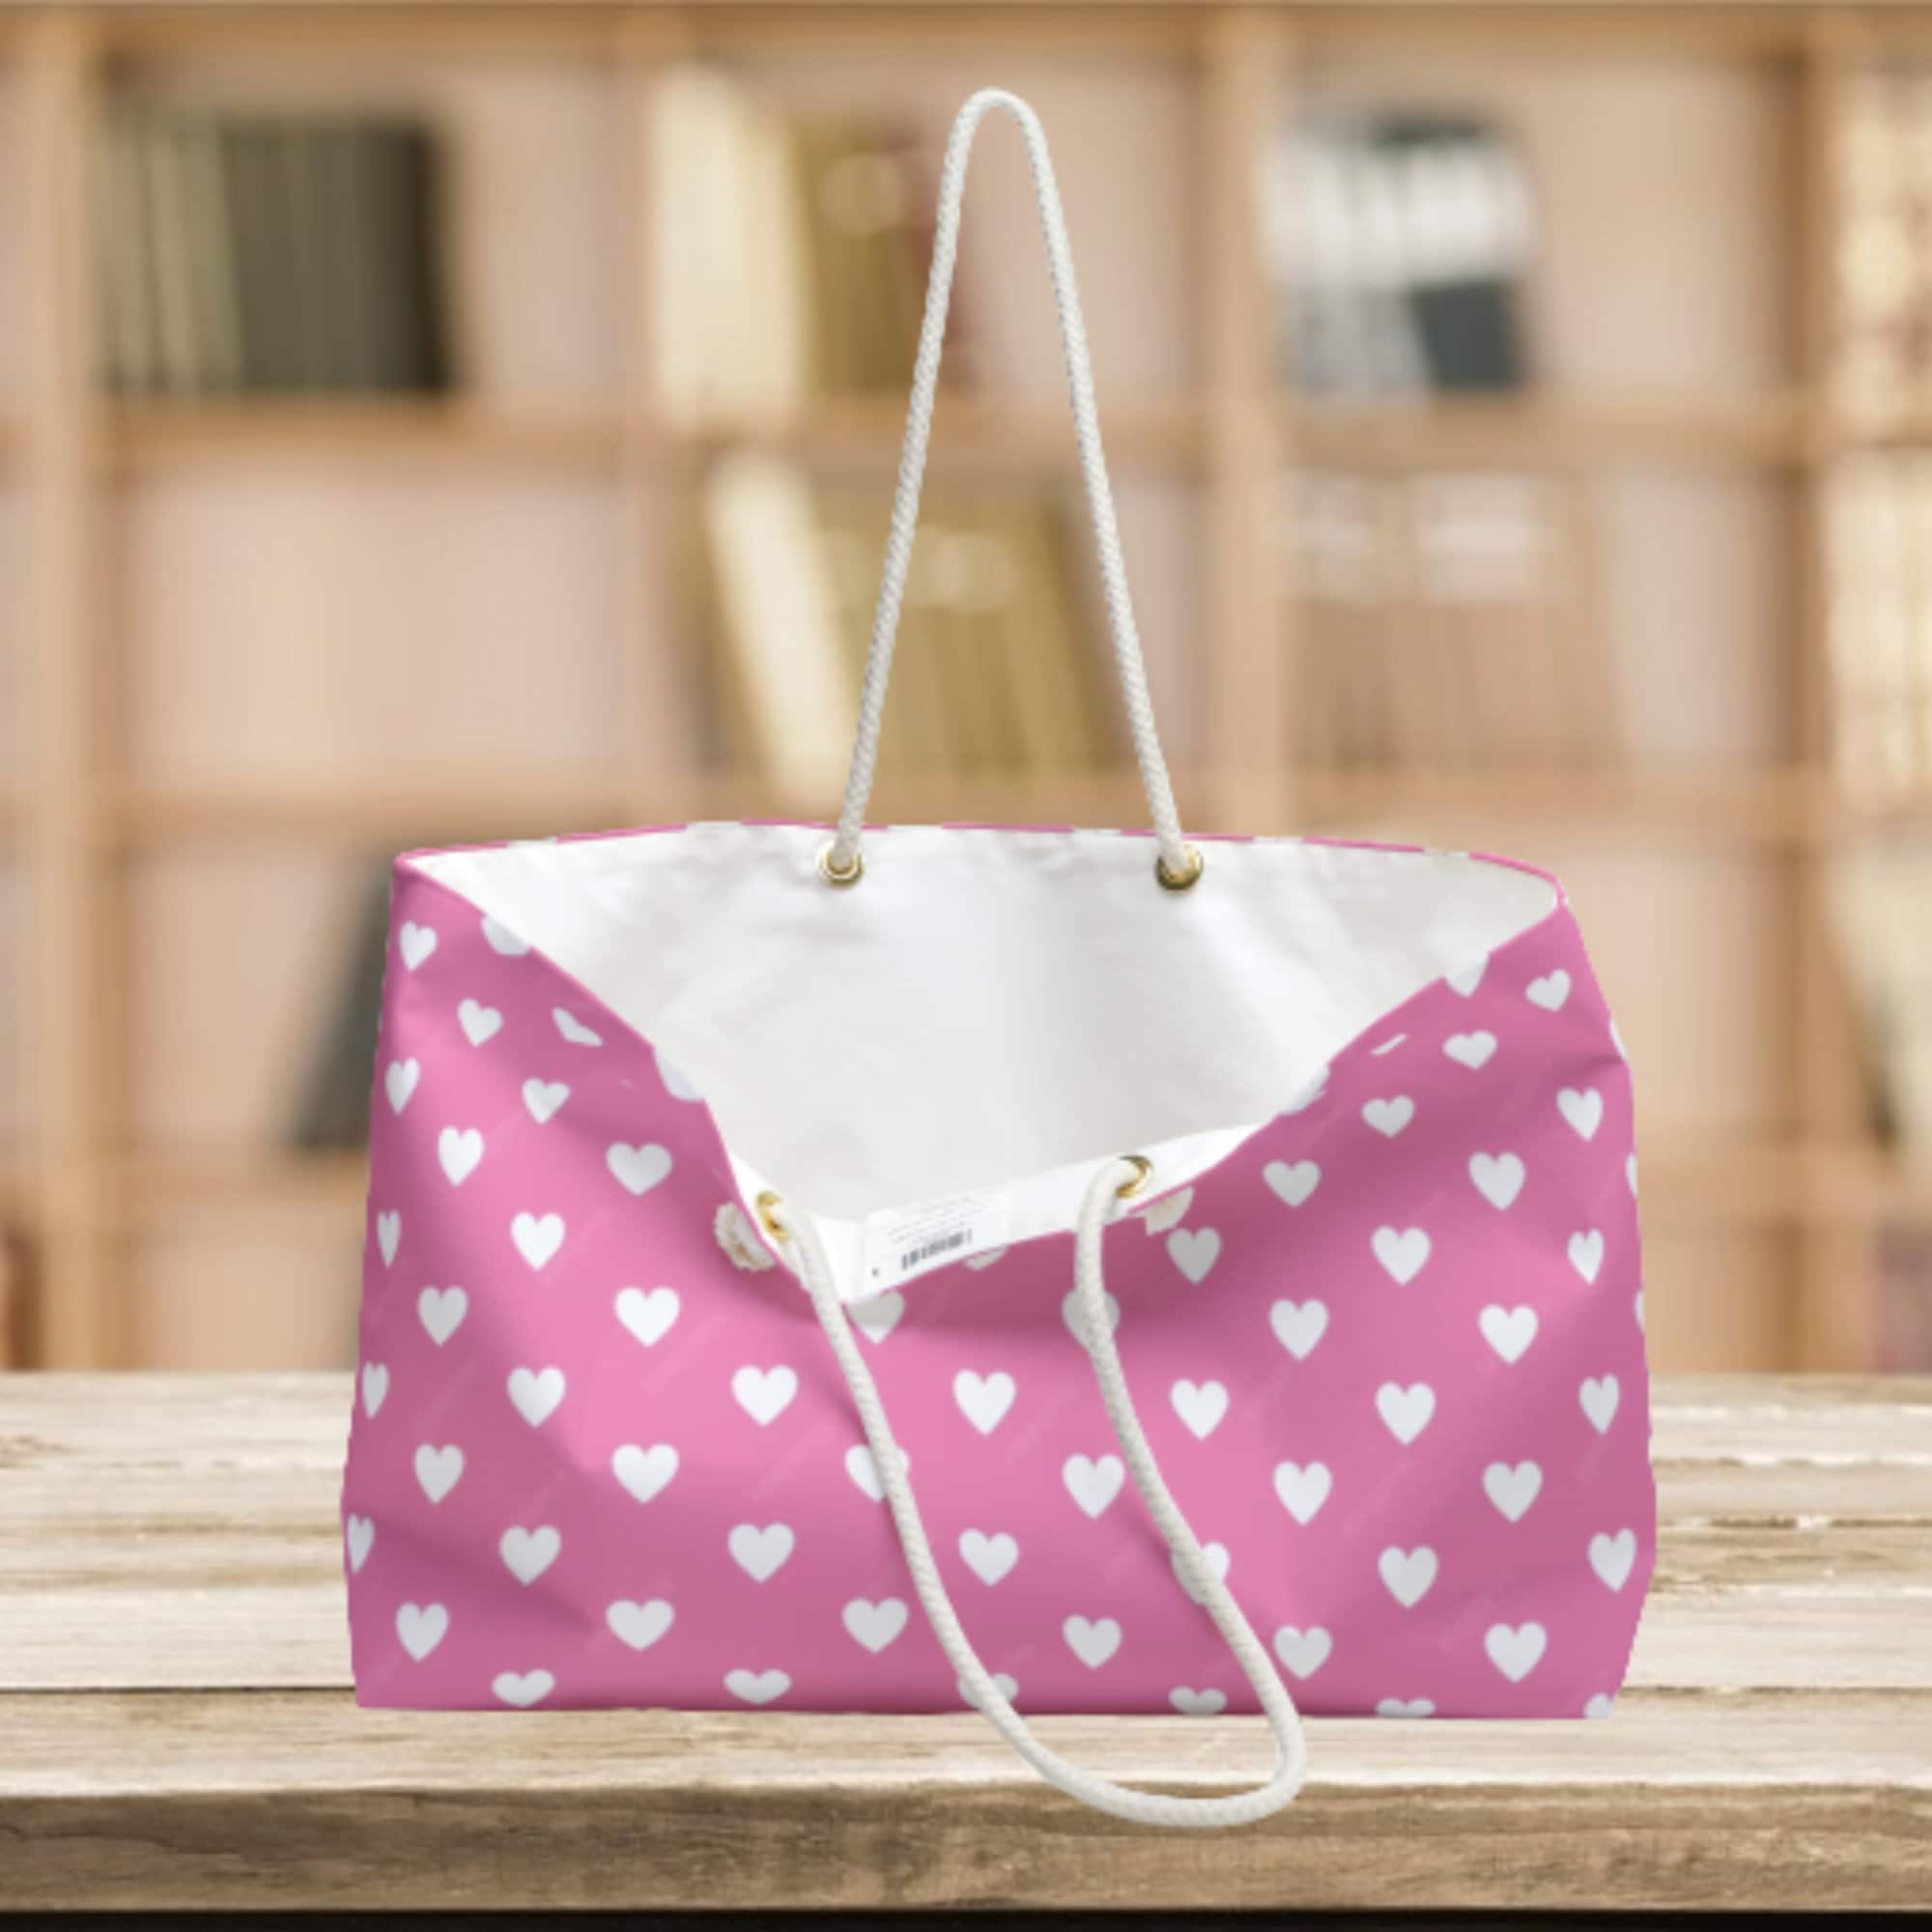 Hot Pink Color Weekender Bag, Solid Bright Pink Color 24x13 Designer  Modern Essential Market Large Tote Bag- Made in USA